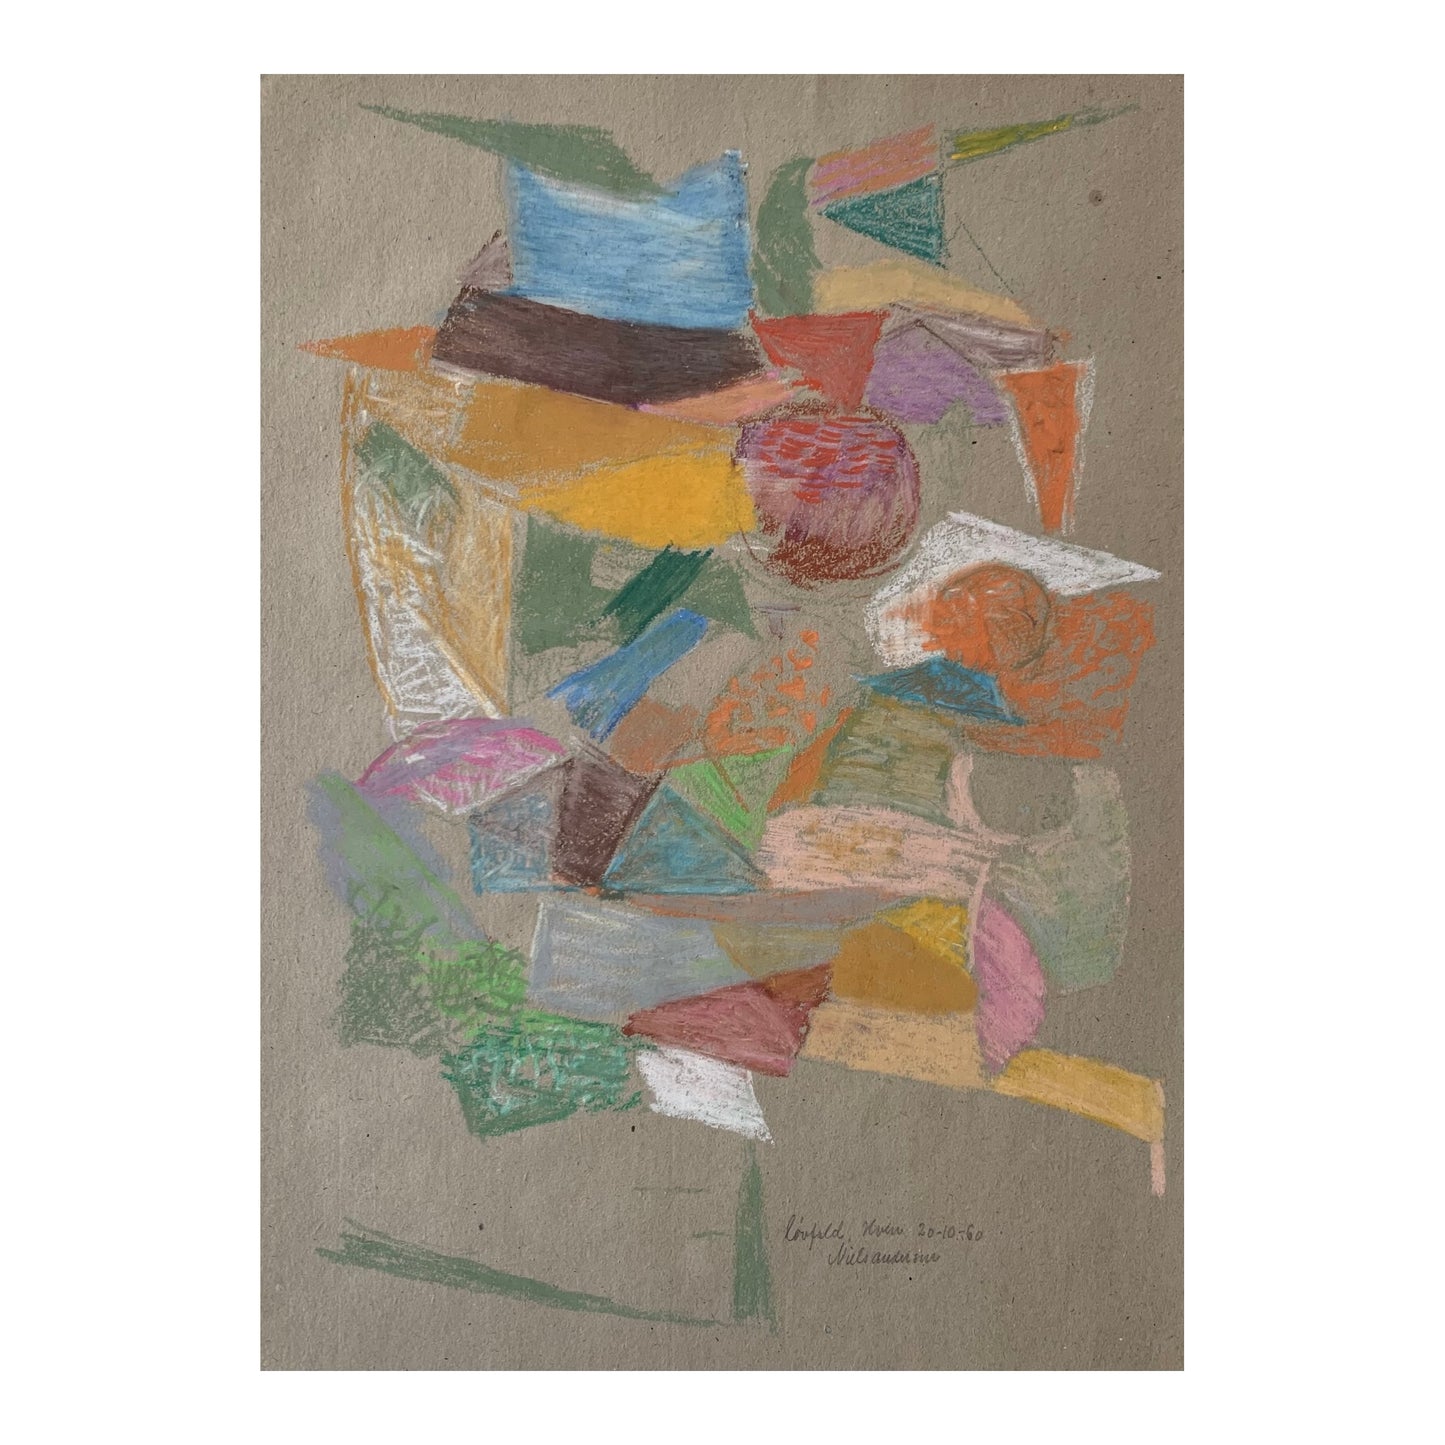 Niels Andersen. "Leaves, Hven", 1960